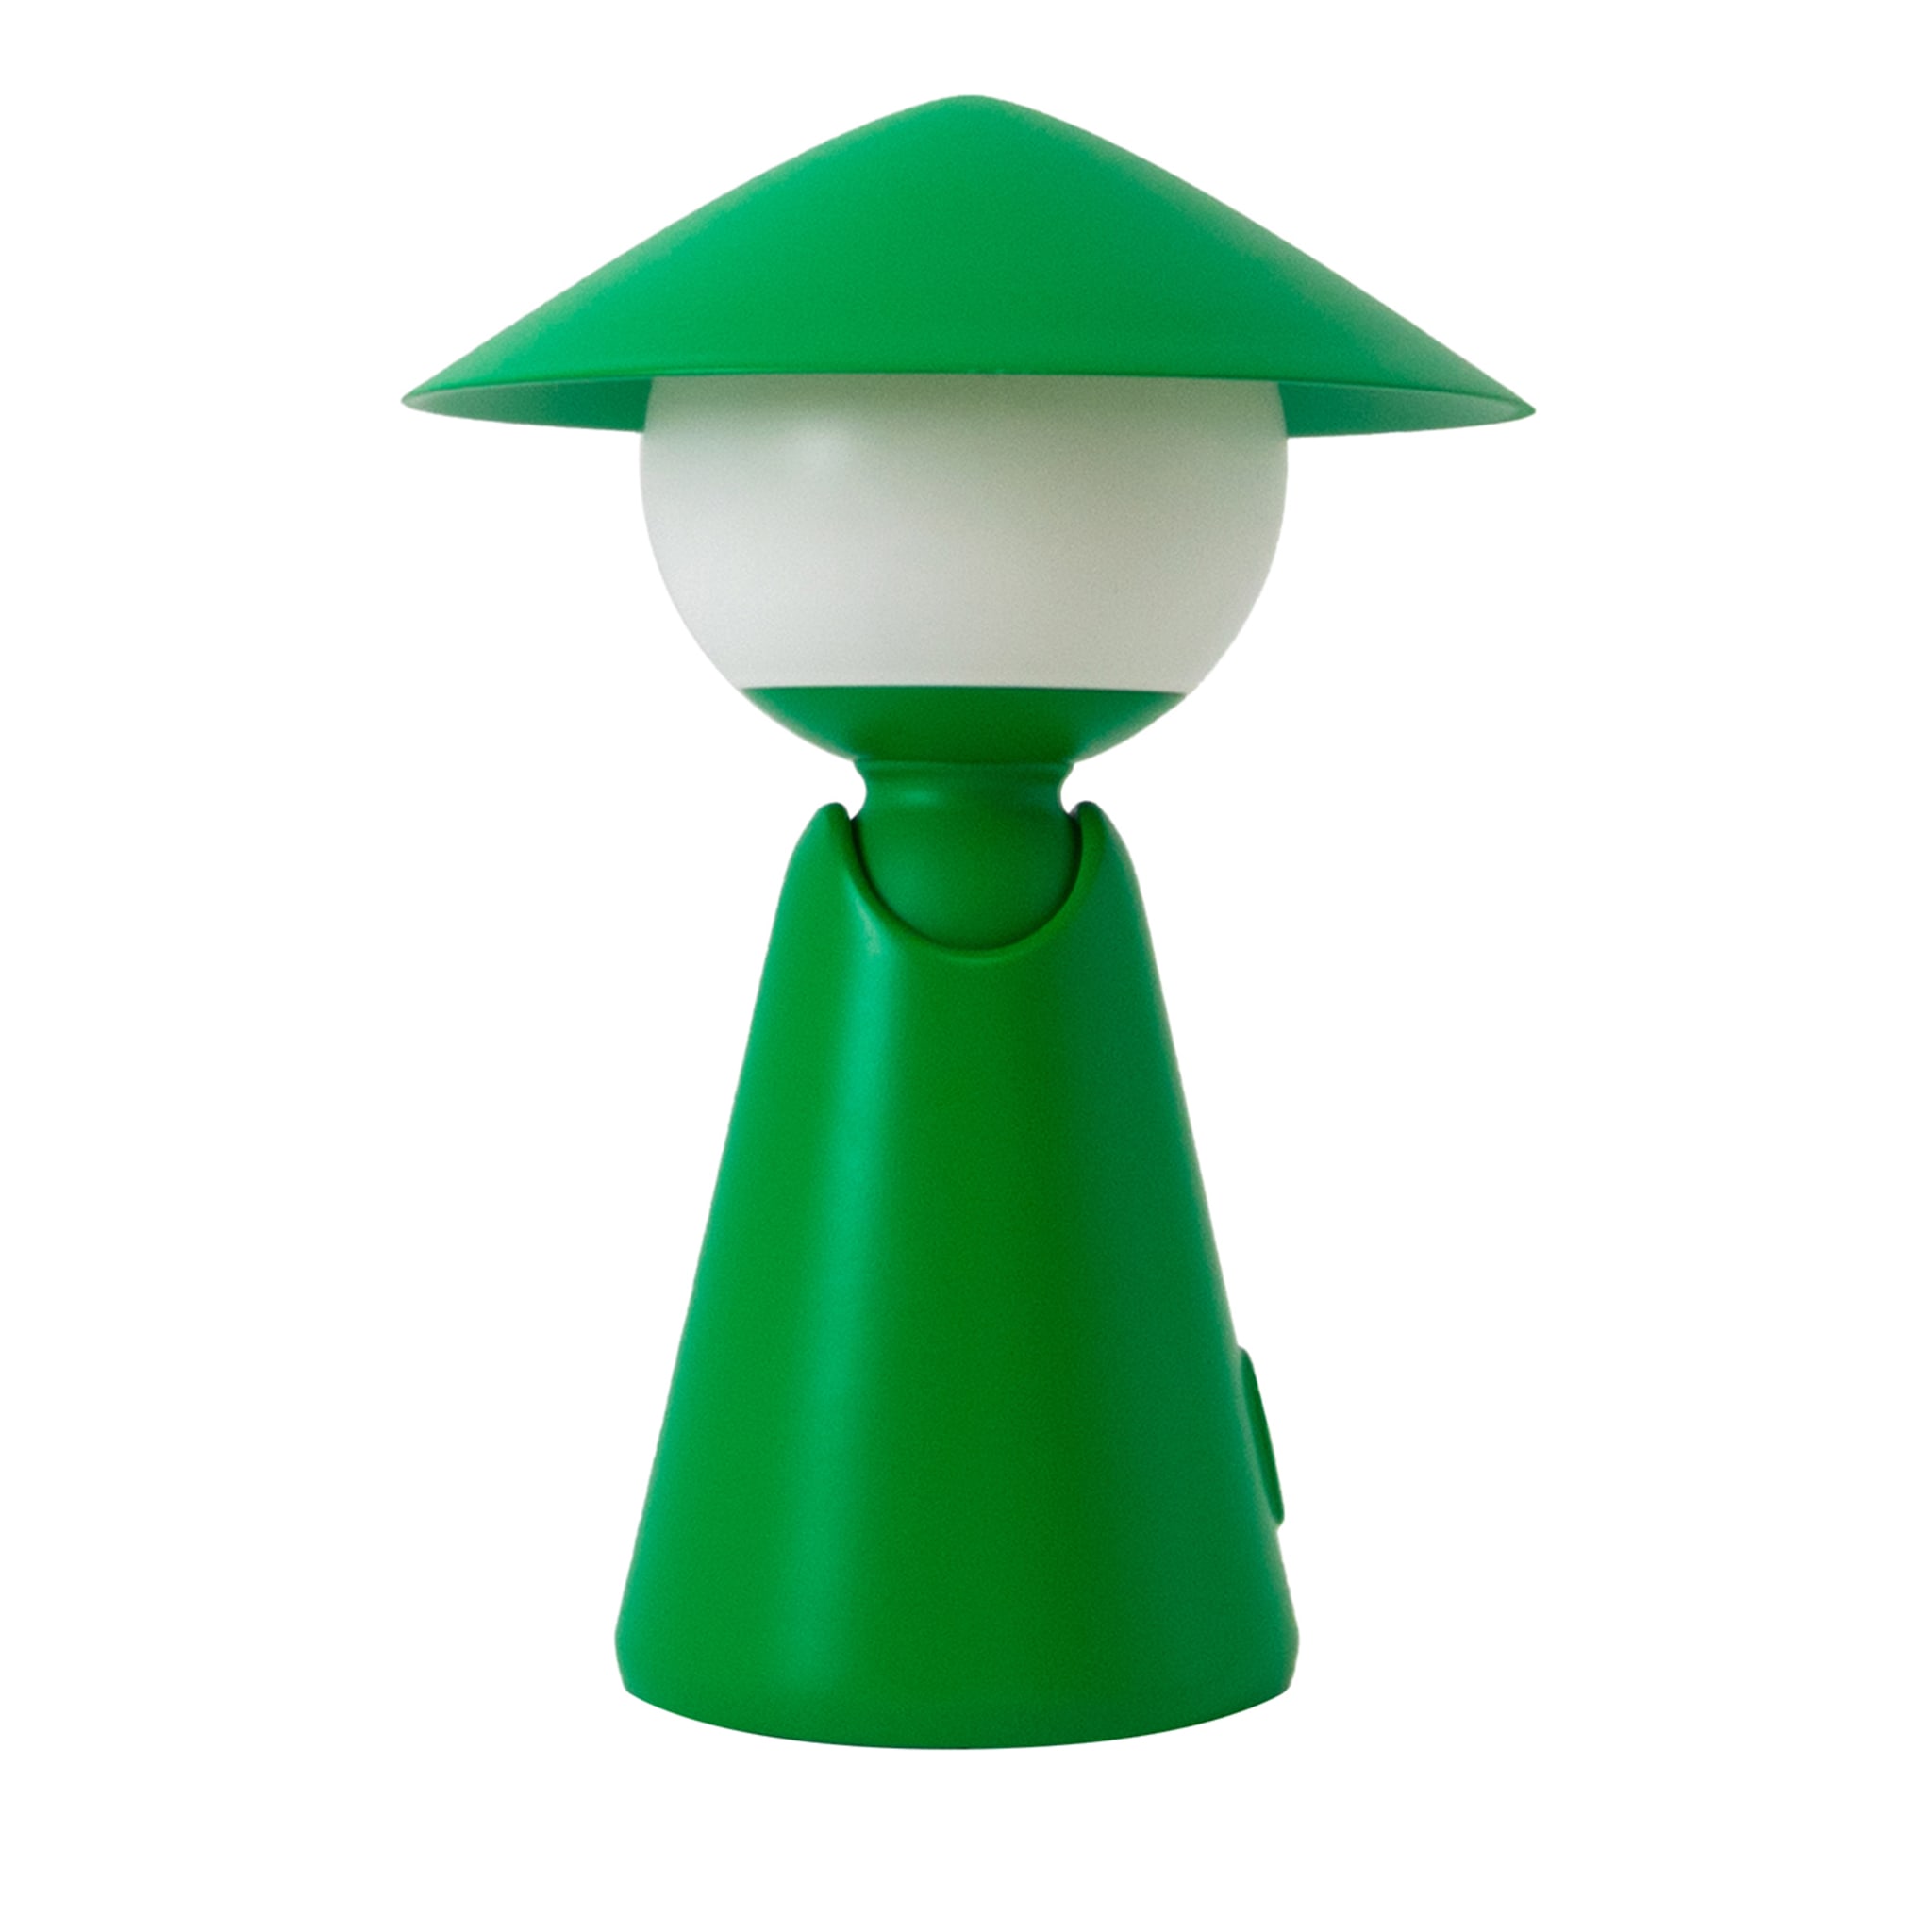 Puddy Green Wiederaufladbare Tischlampe von Albore Design - Hauptansicht